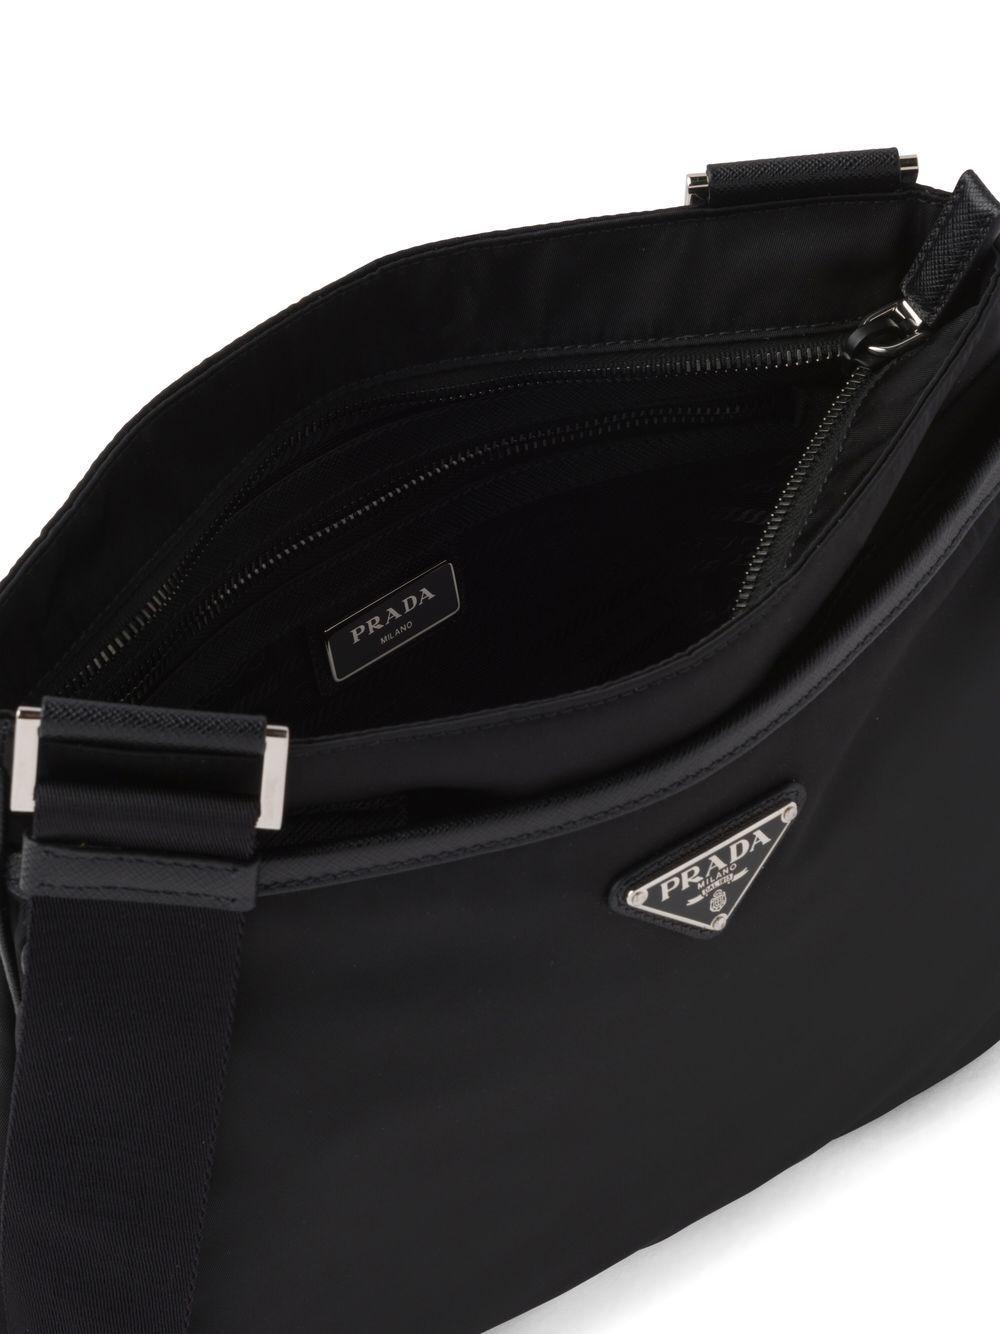 Prada Triangle Logo Shoulder Bag in Re-Nylon & Saffiano Leather - BOPF